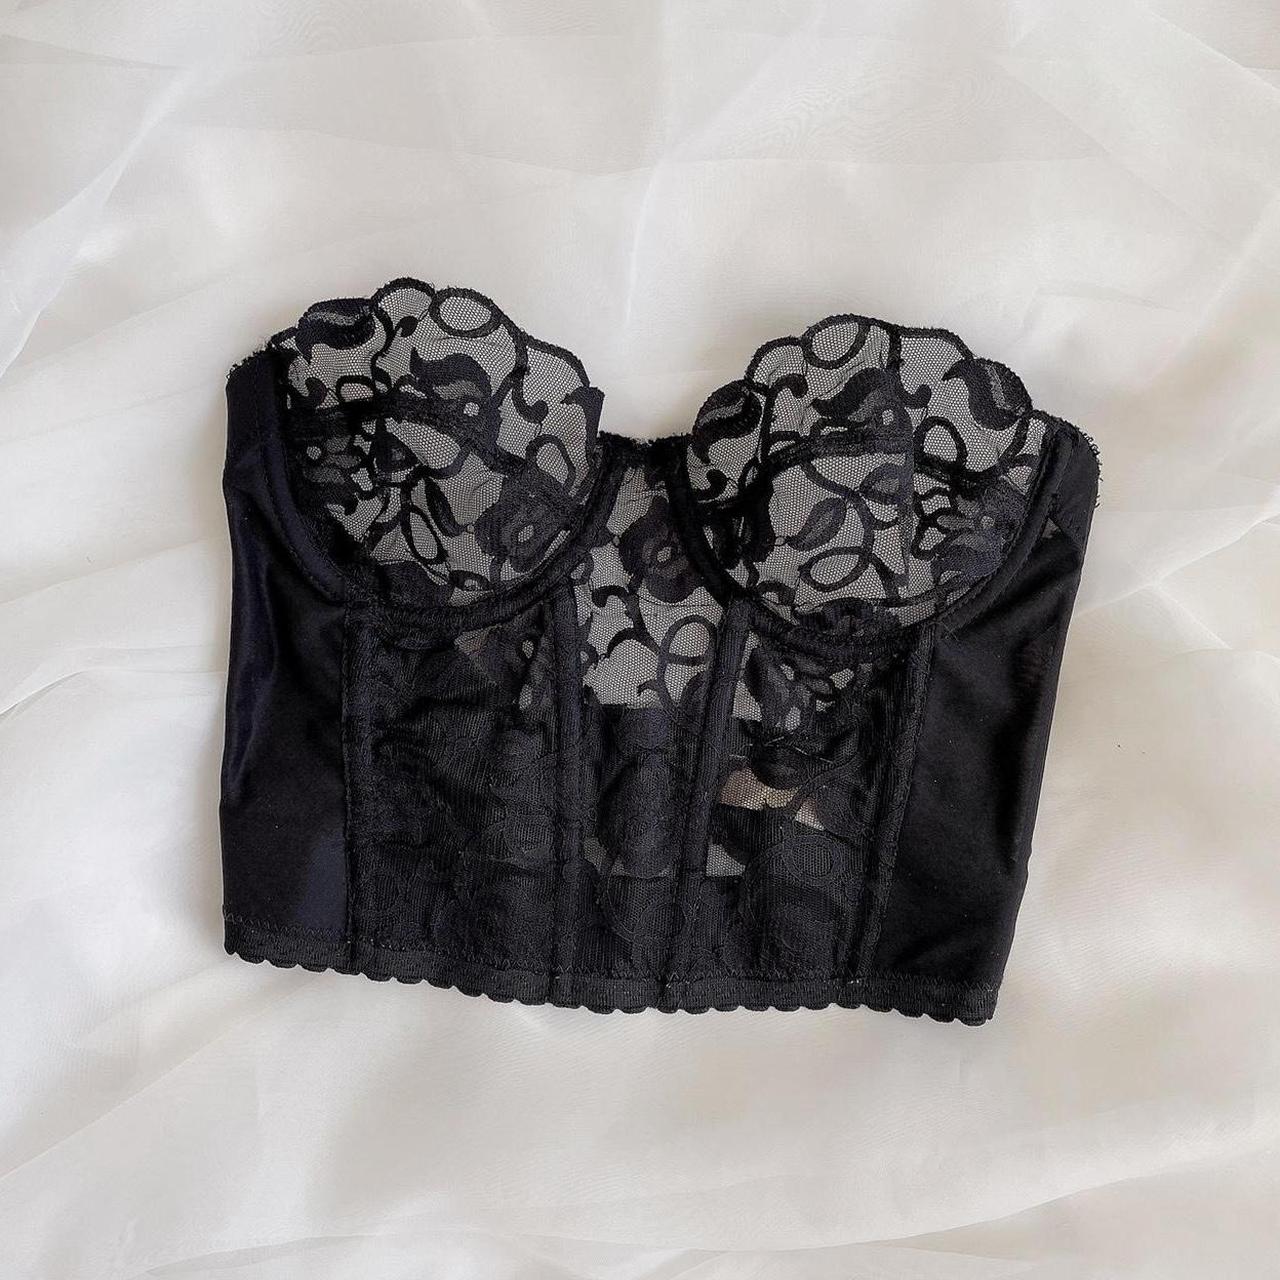 Vintage Victoria’s Secret black lace bustier ♡ The... - Depop